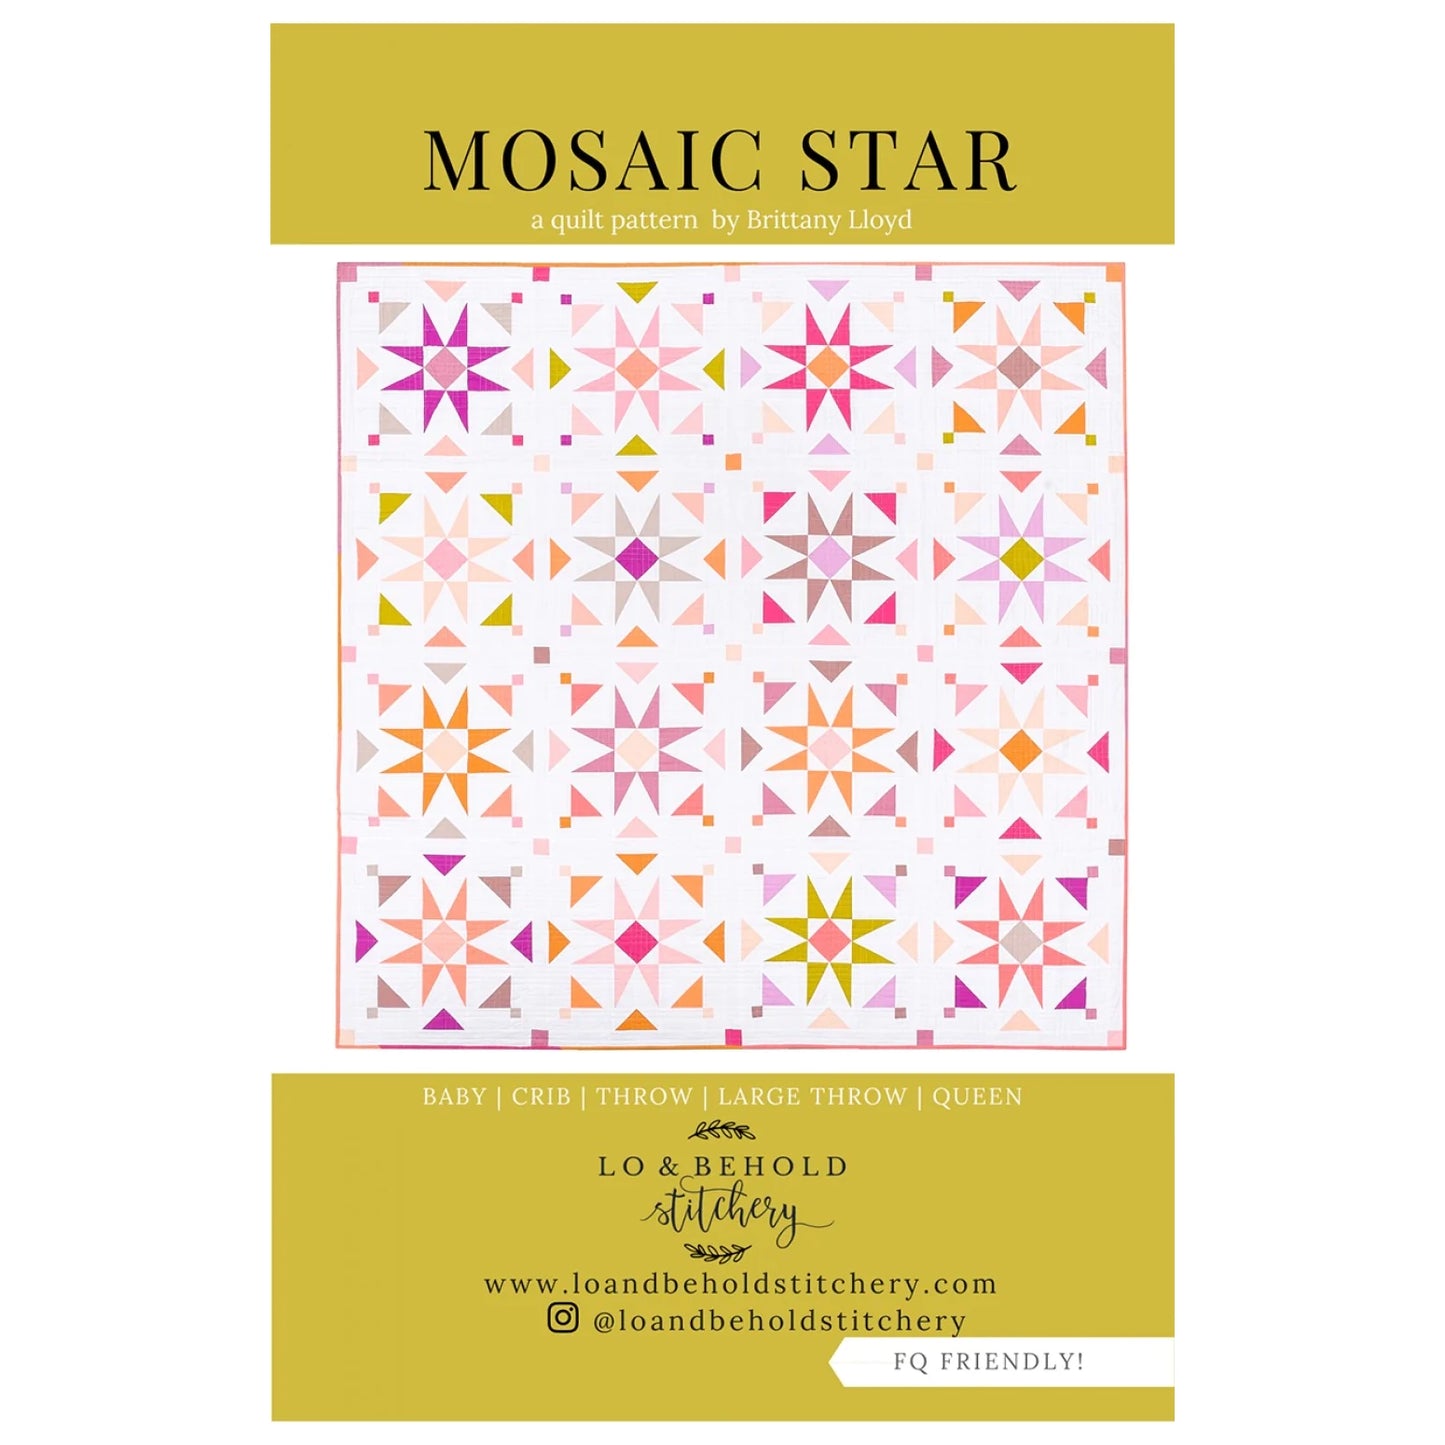 Lo & Behold Stitchery - Mosaic Star